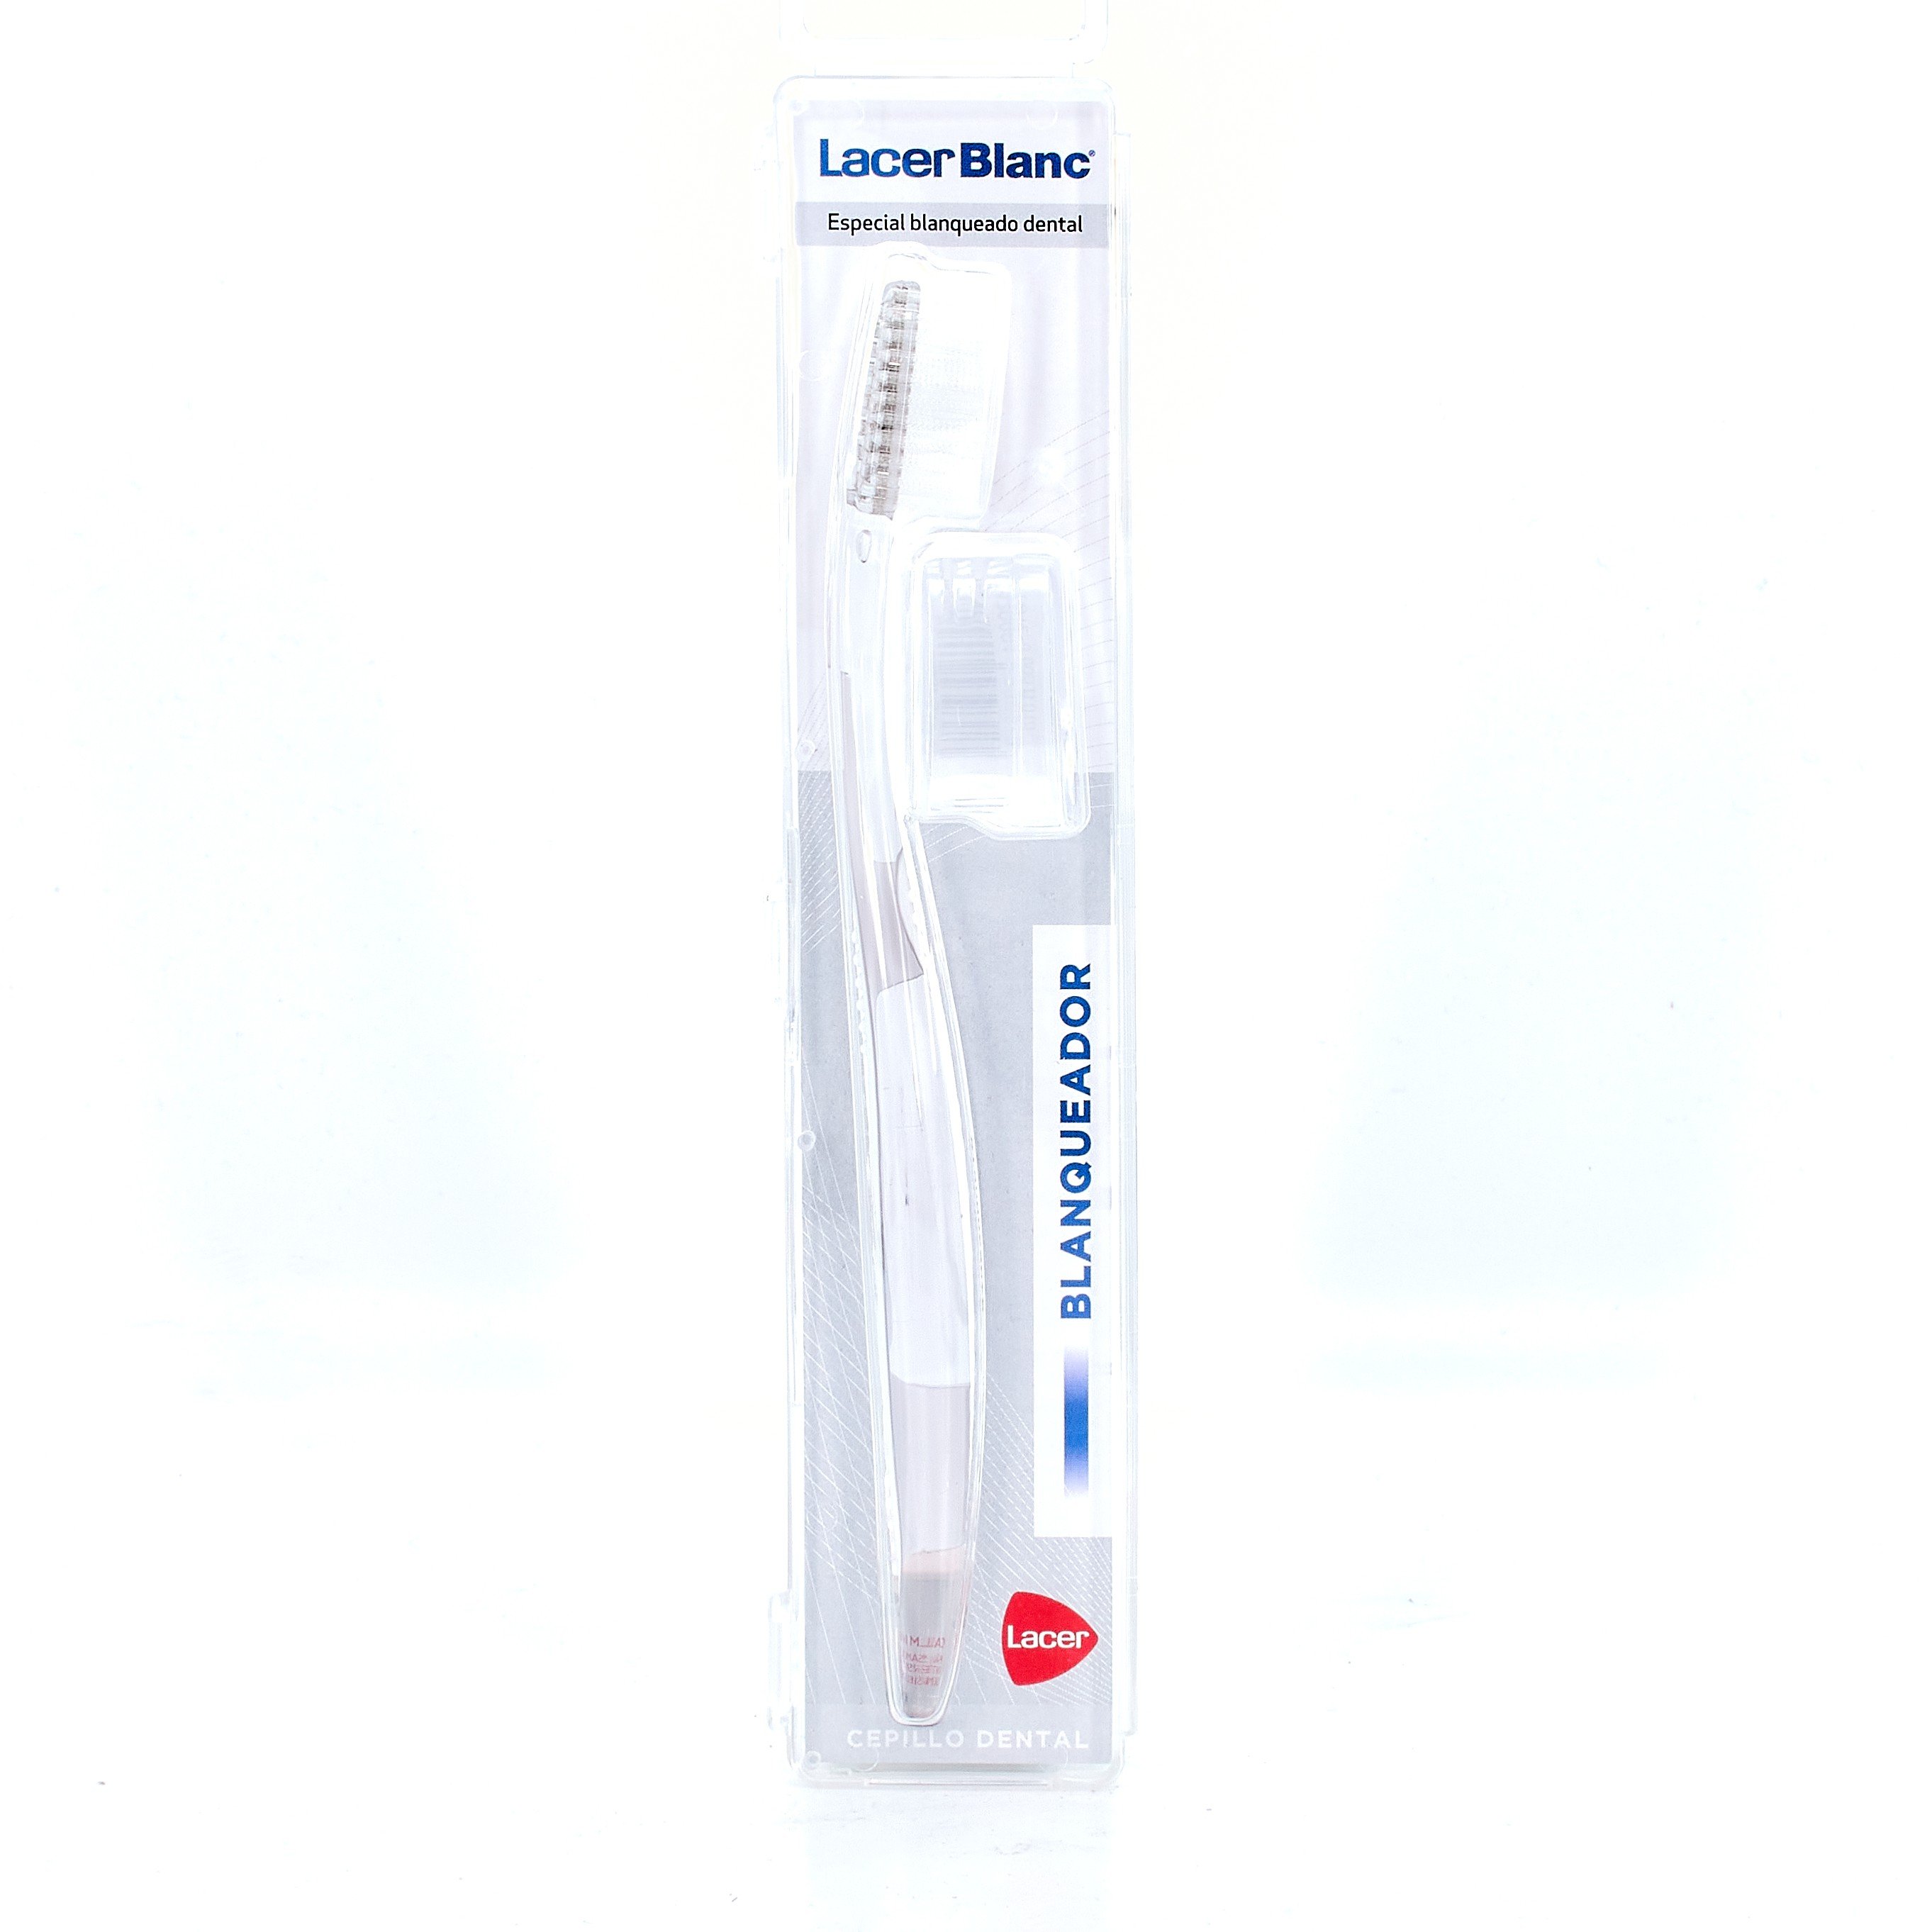 Comprar LacerBlanc Cepillo Dental Blanqueador al mejor precio